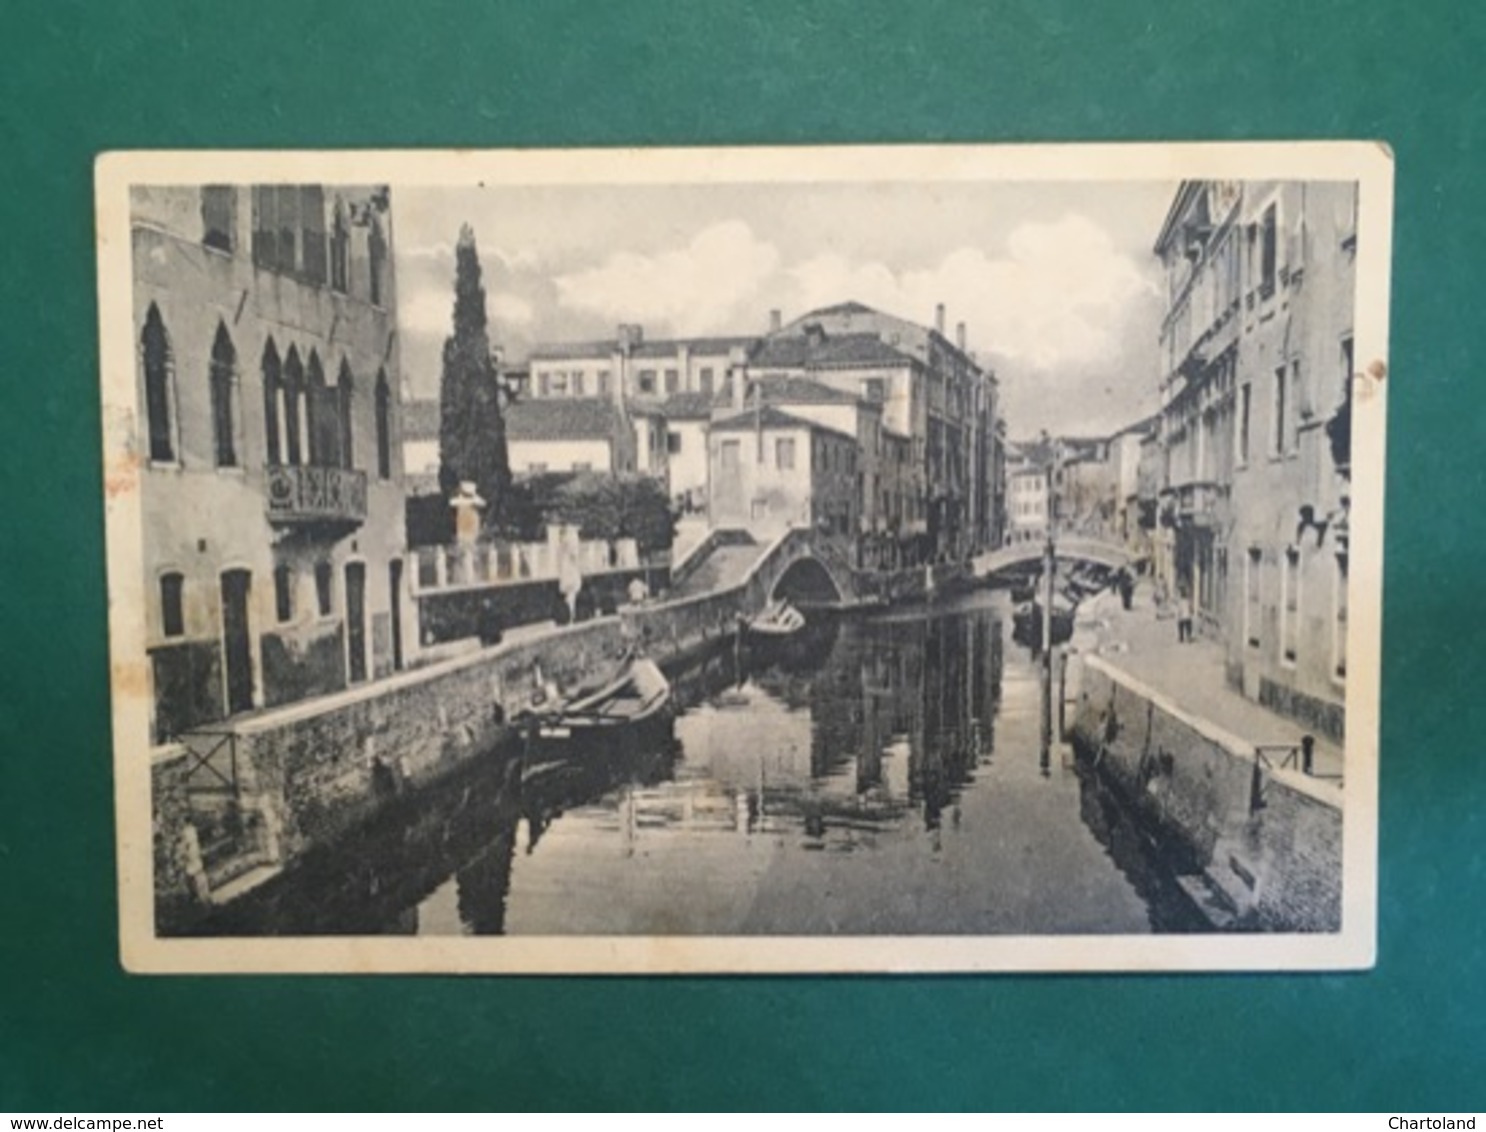 Cartolina Venezia - Canale E Ponte Dei Carmini - 1930 Ca. - Venezia (Venice)